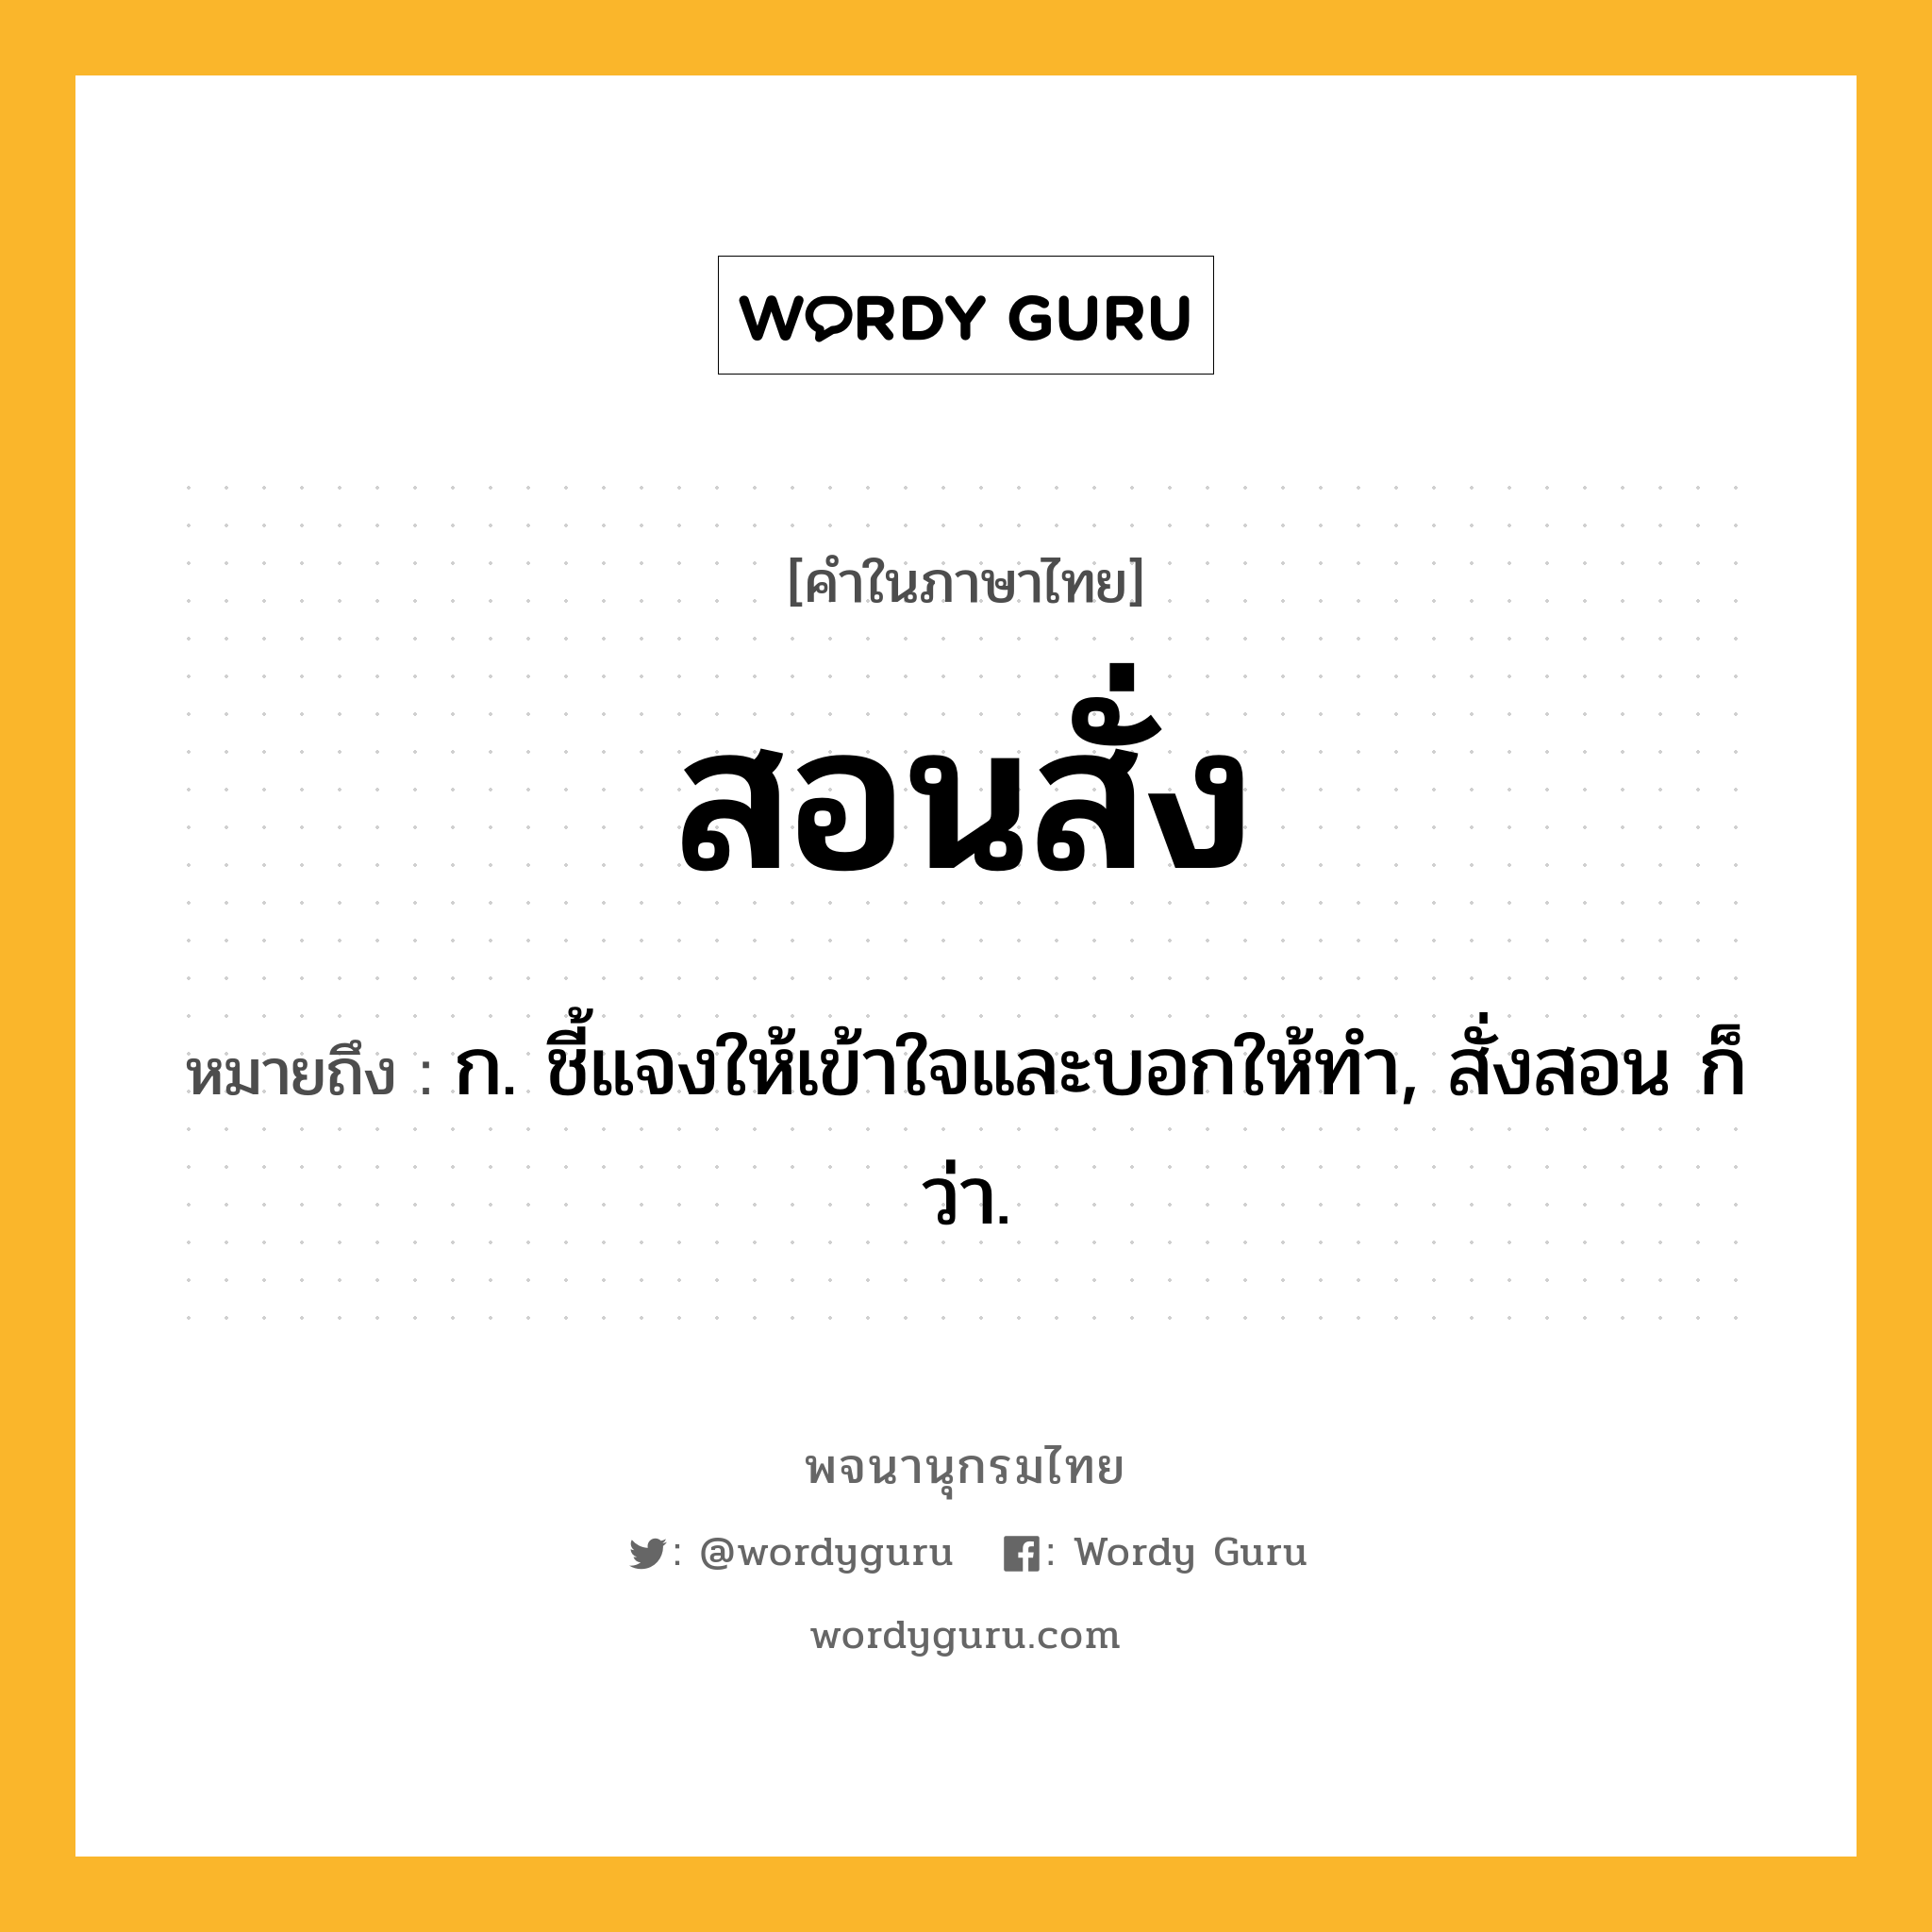 สอนสั่ง หมายถึงอะไร?, คำในภาษาไทย สอนสั่ง หมายถึง ก. ชี้แจงให้เข้าใจและบอกให้ทำ, สั่งสอน ก็ว่า.